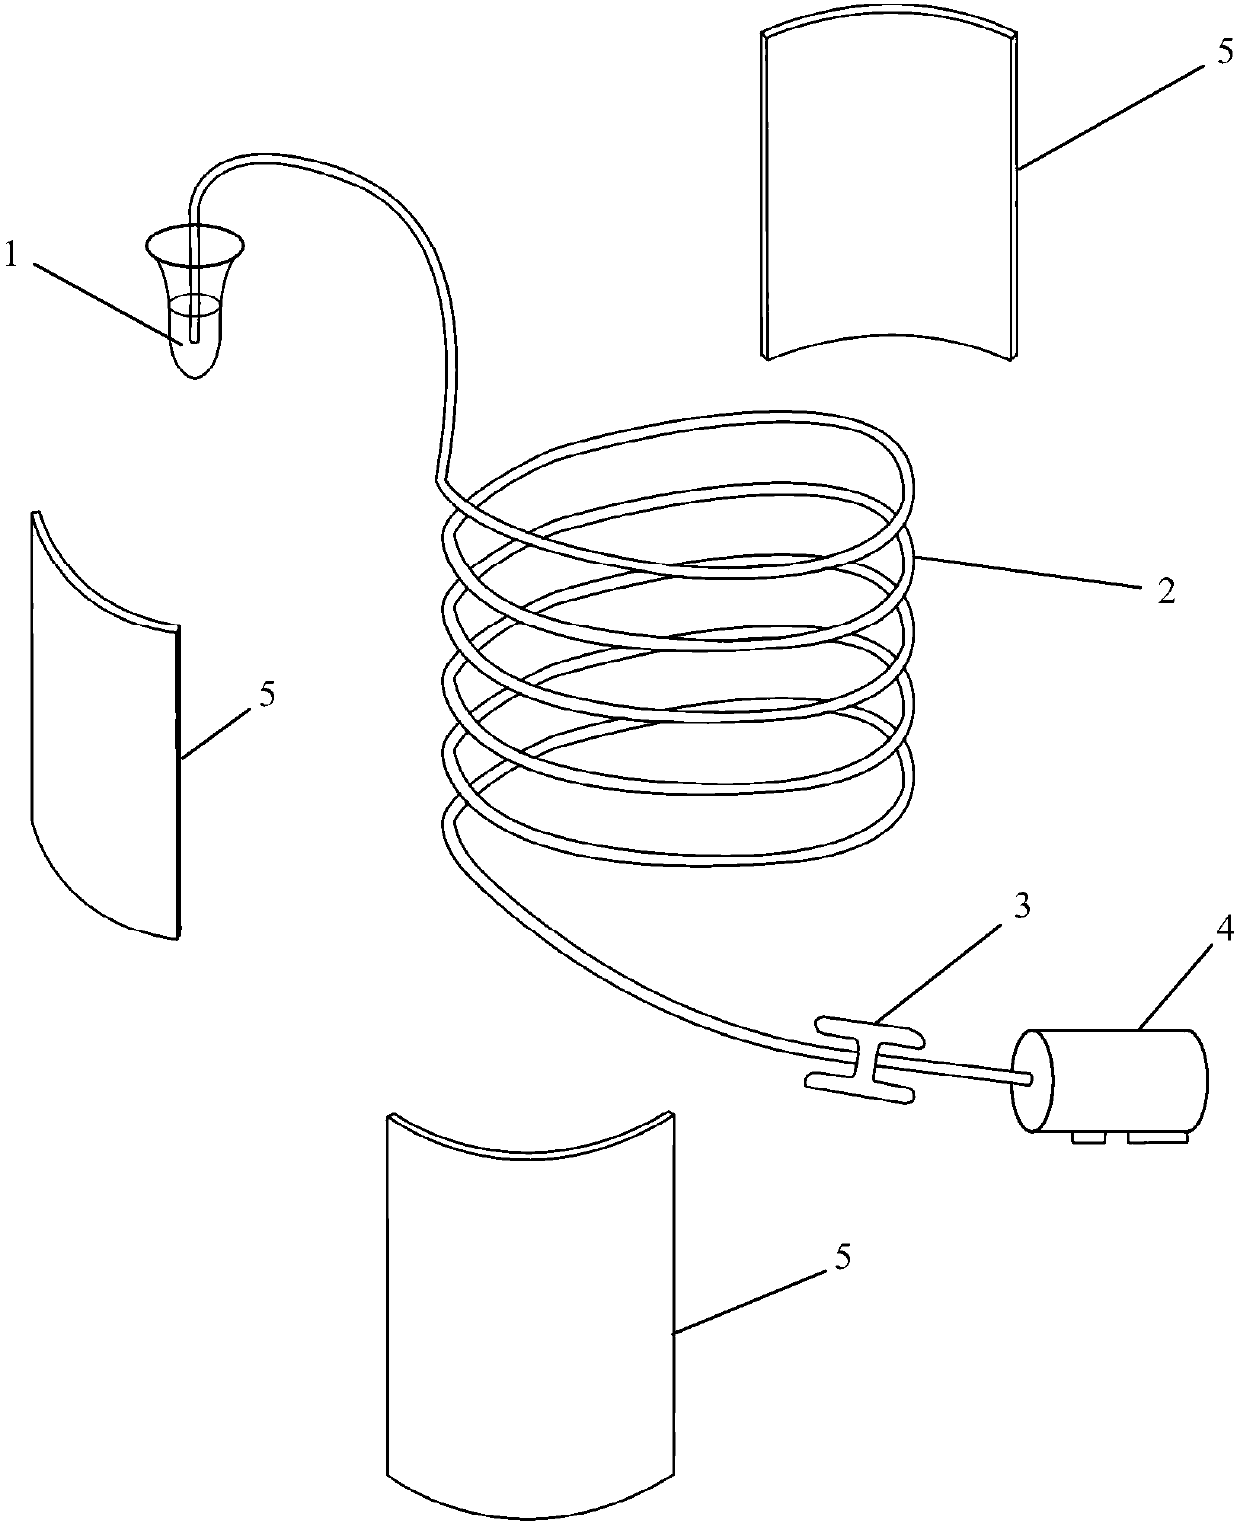 Liquid drop temperature circular reaction equipment